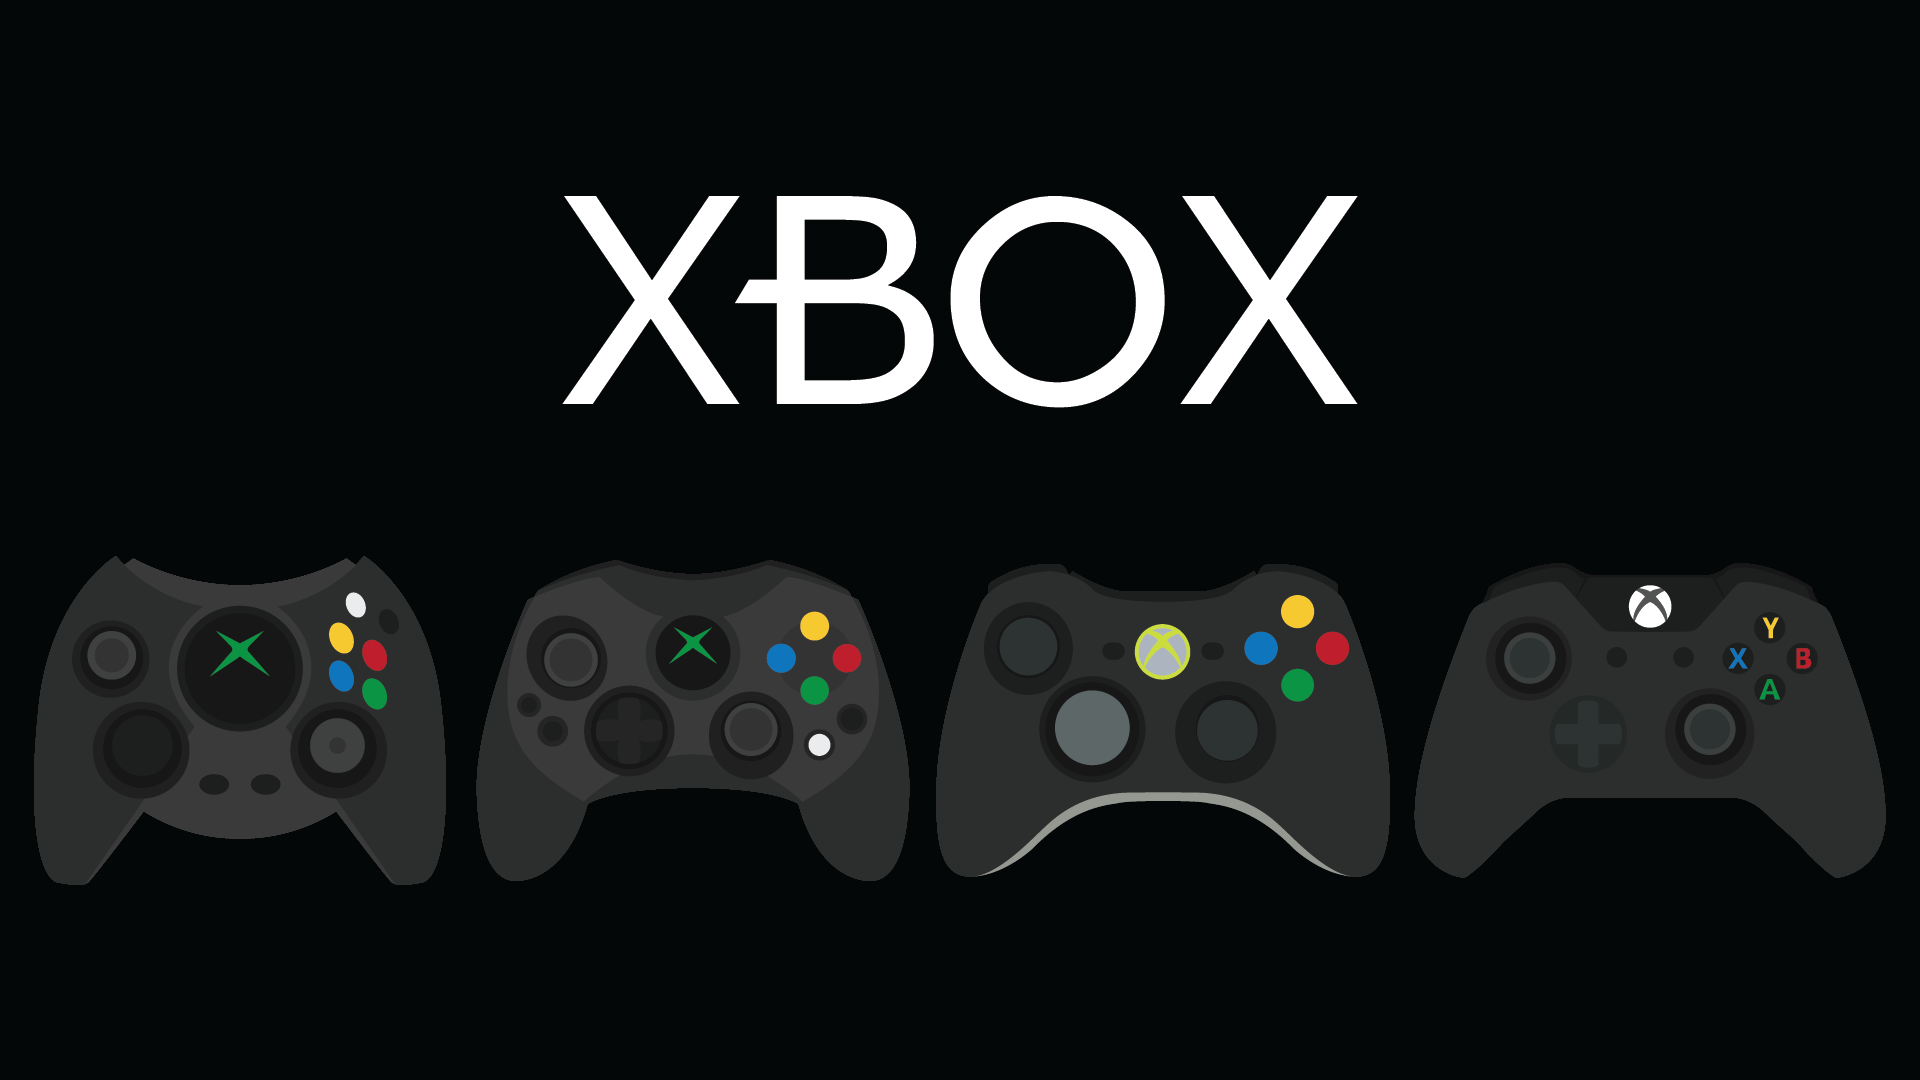 Free Download Xbox Wallpapers | PixelsTalk.Net